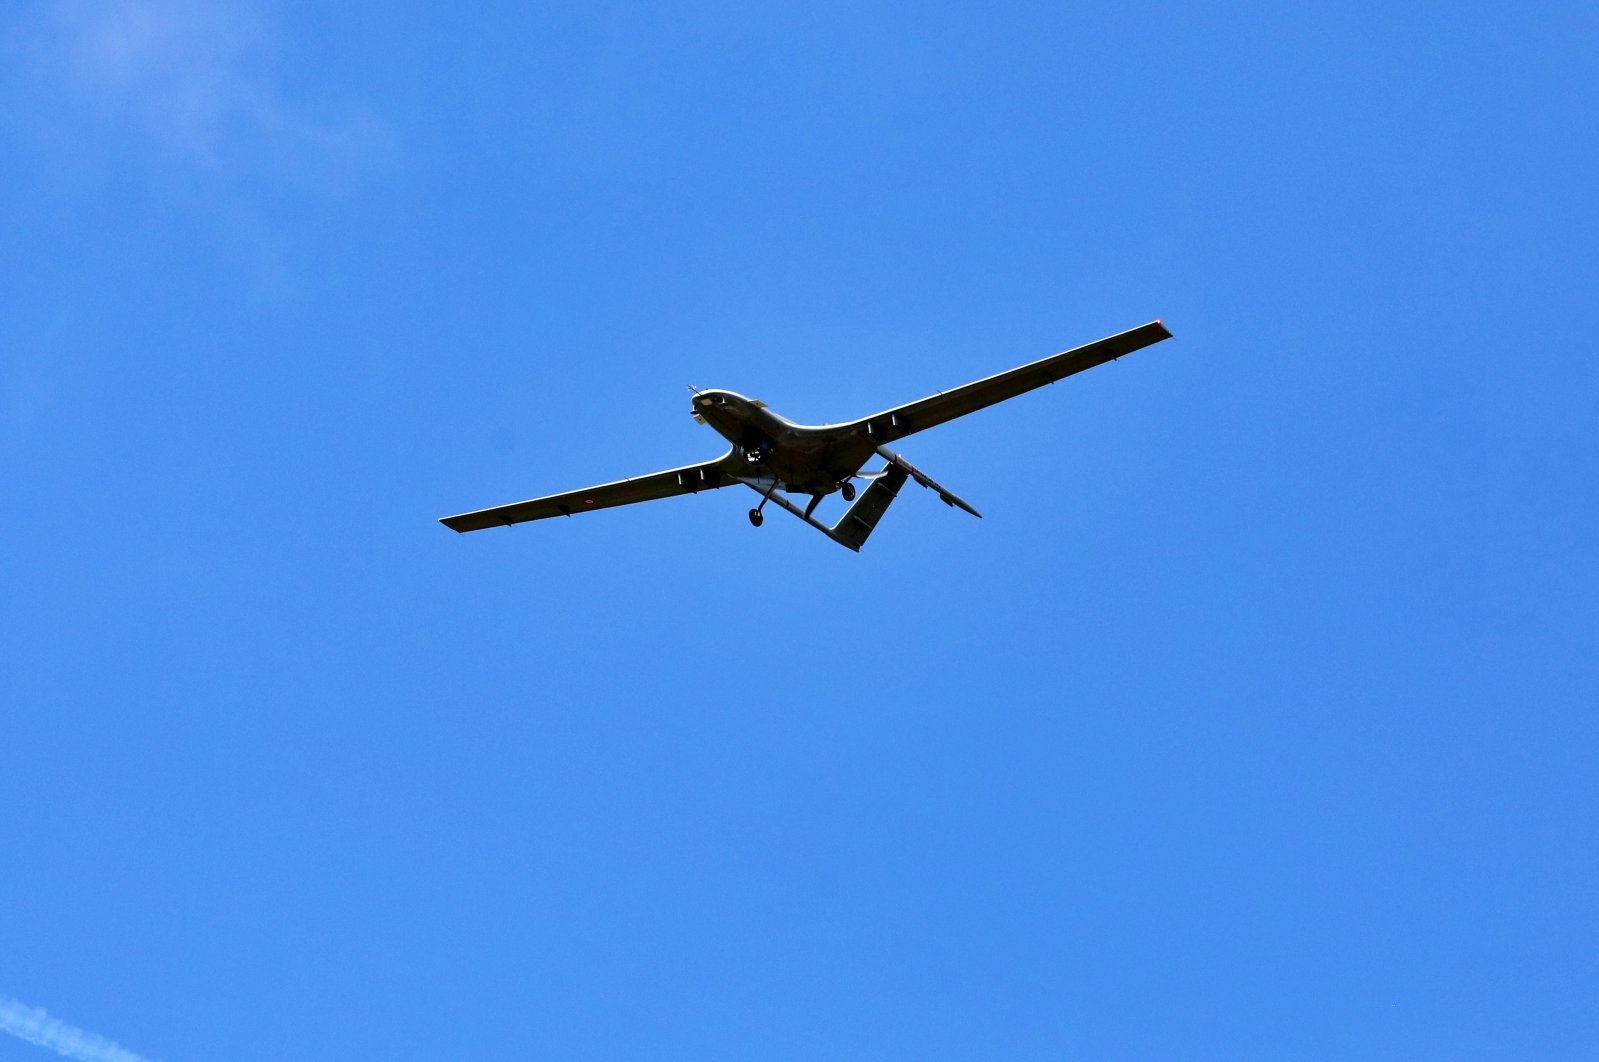 Rumania mengkonfirmasi niat untuk membeli drone tempur dari Türkiye